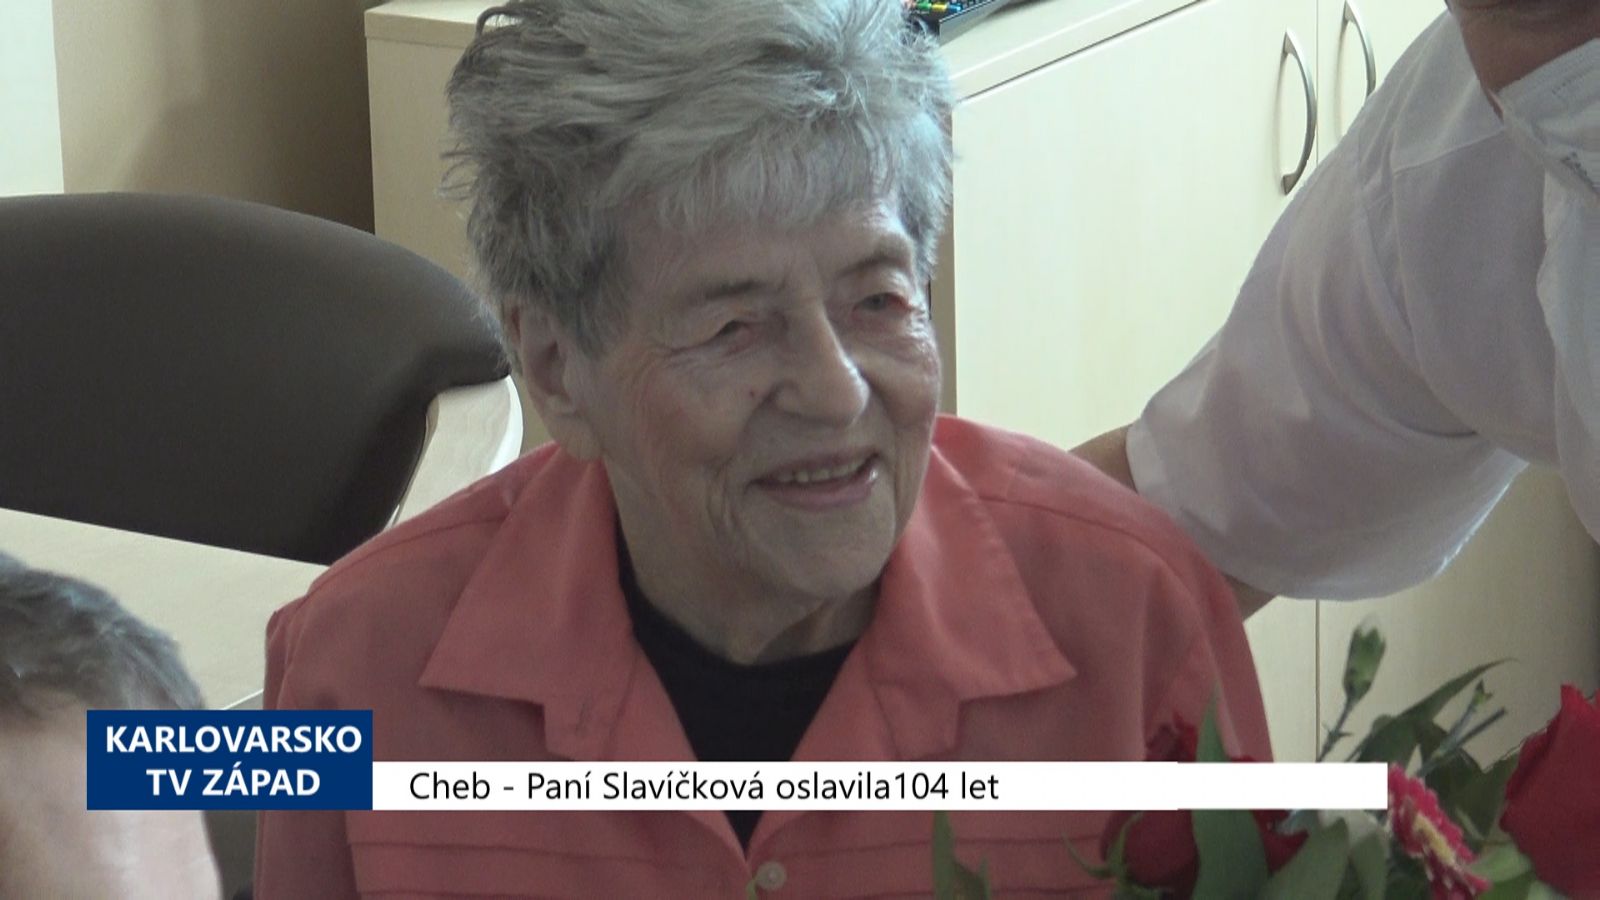 Cheb: Paní Slavíčková oslavila 104 let (TV Západ)